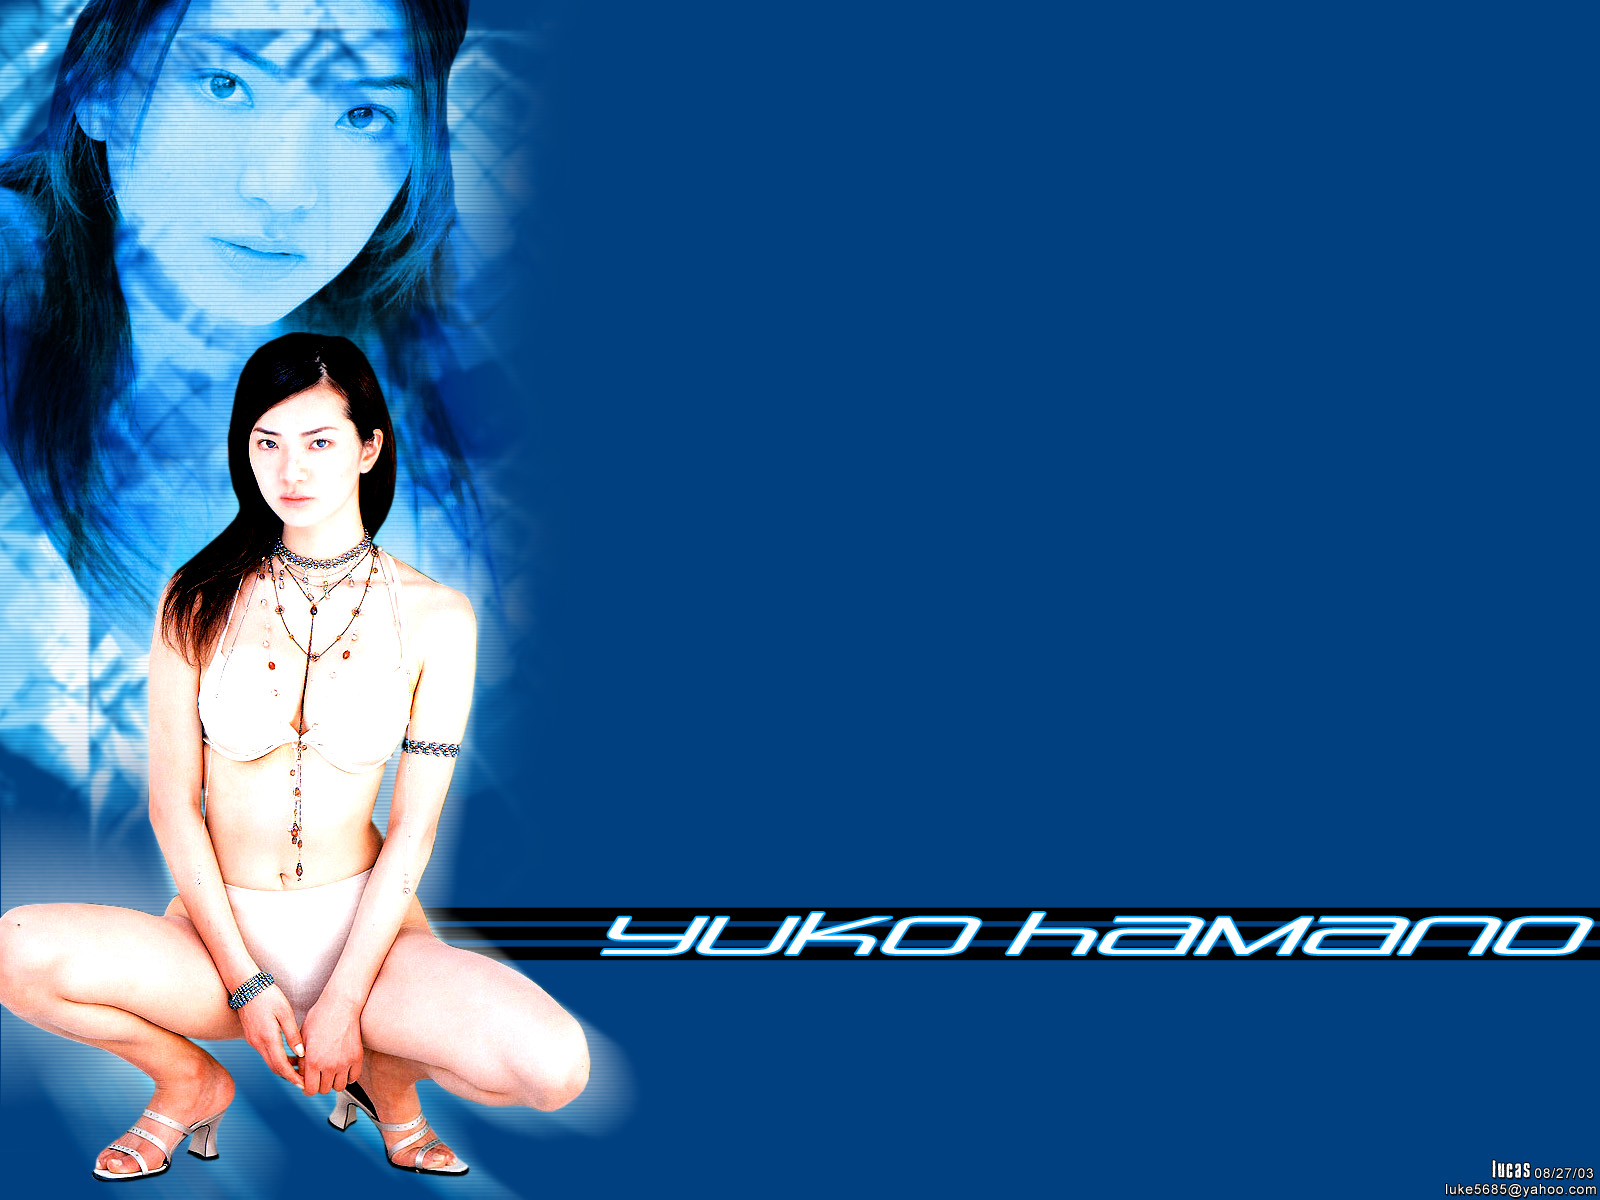 Download full size Yuko Hamano wallpaper / Celebrities Female / 1600x1200